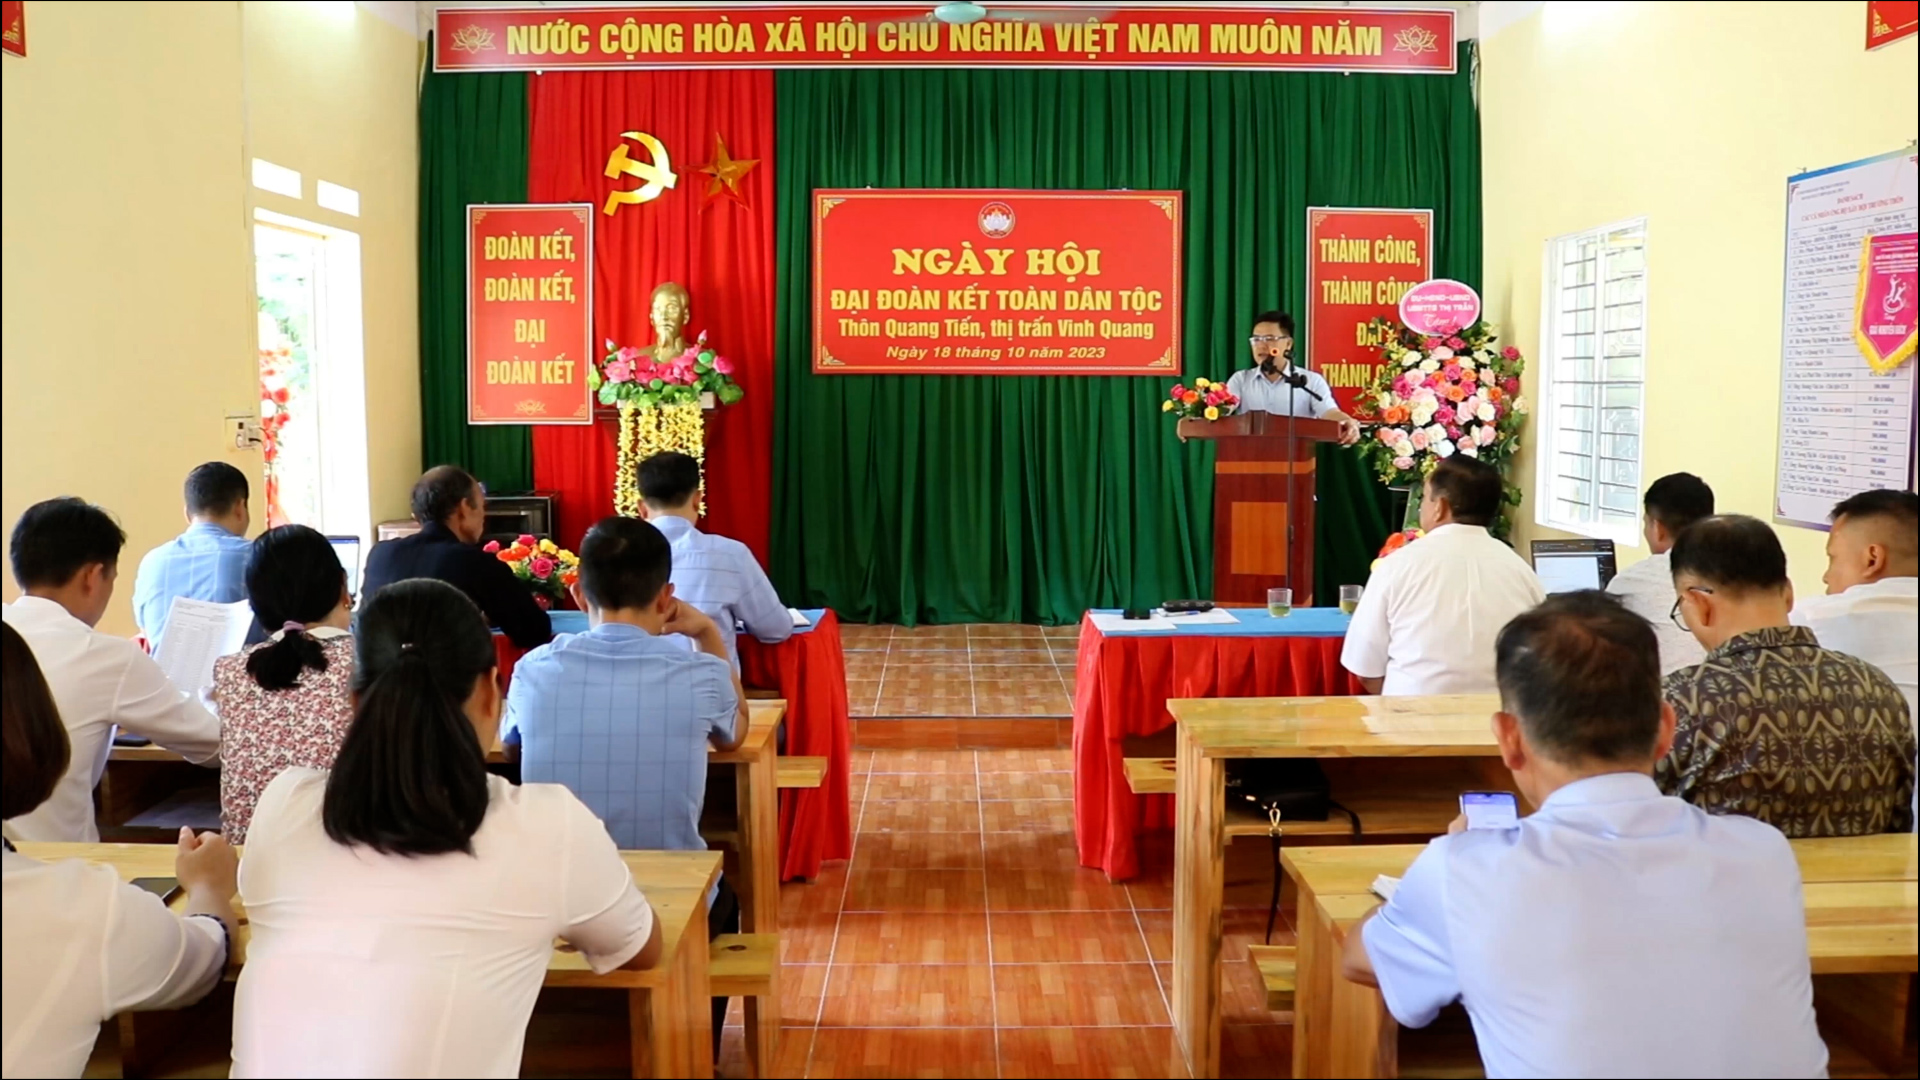 Ngày hội Đại đoàn kết toàn dân tộc thôn Quang Tiến thị trấn Vinh Quang năm 2023